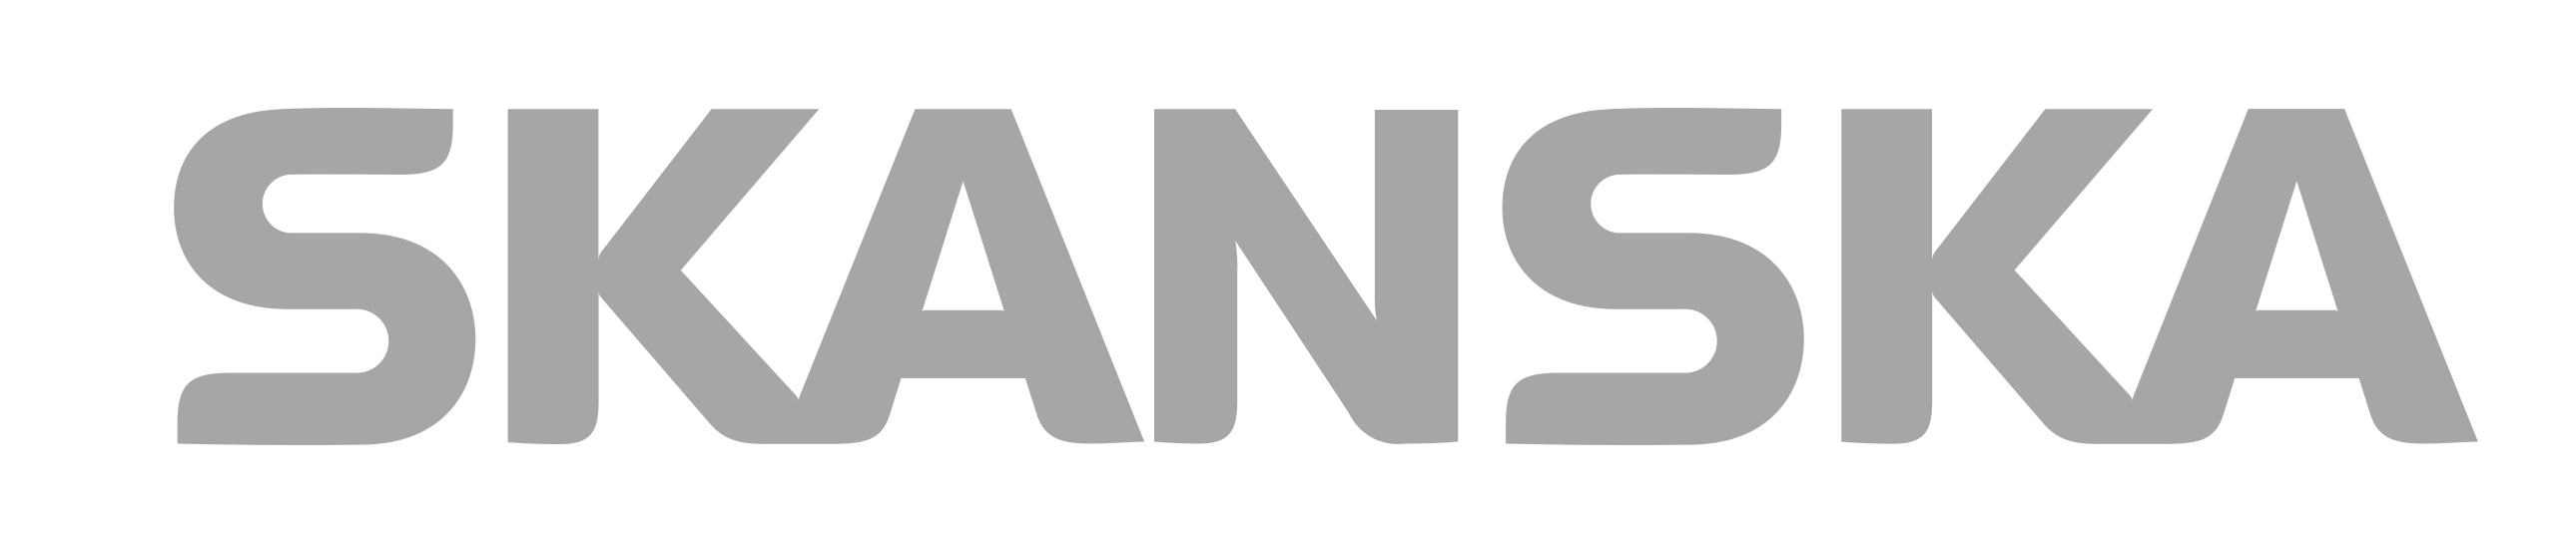 SKANSKA logo